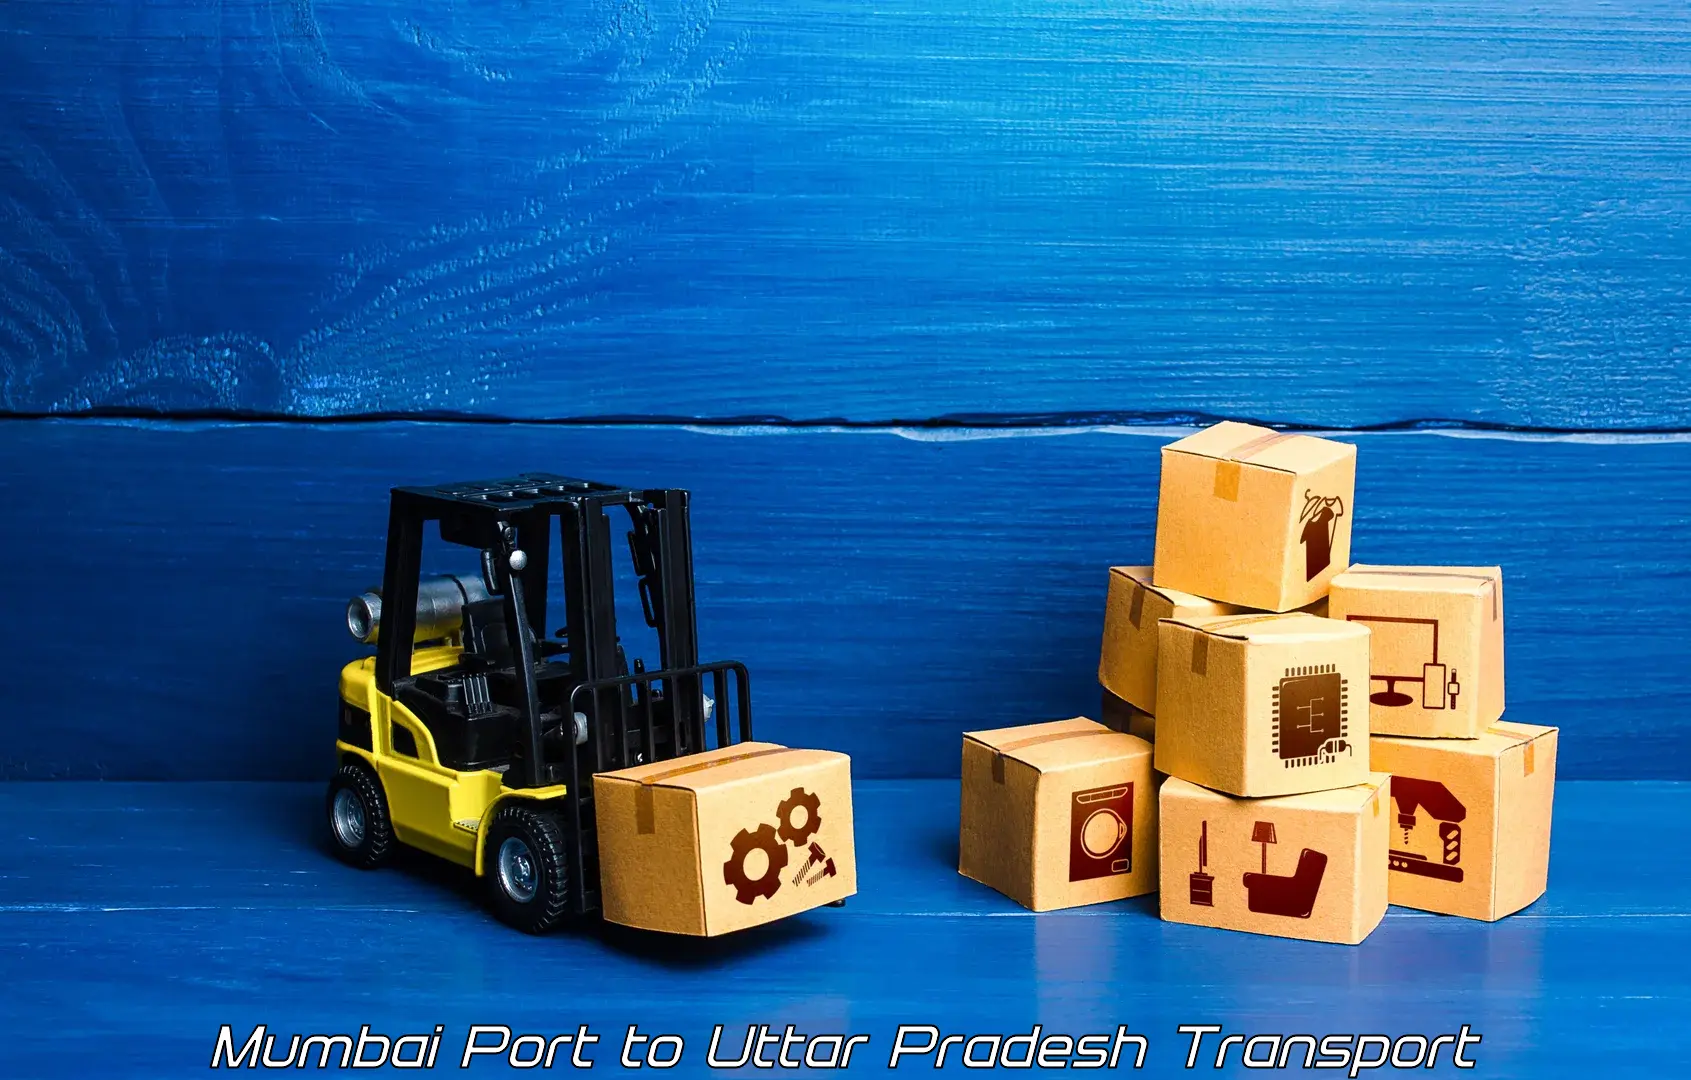 Delivery service Mumbai Port to Nanauta